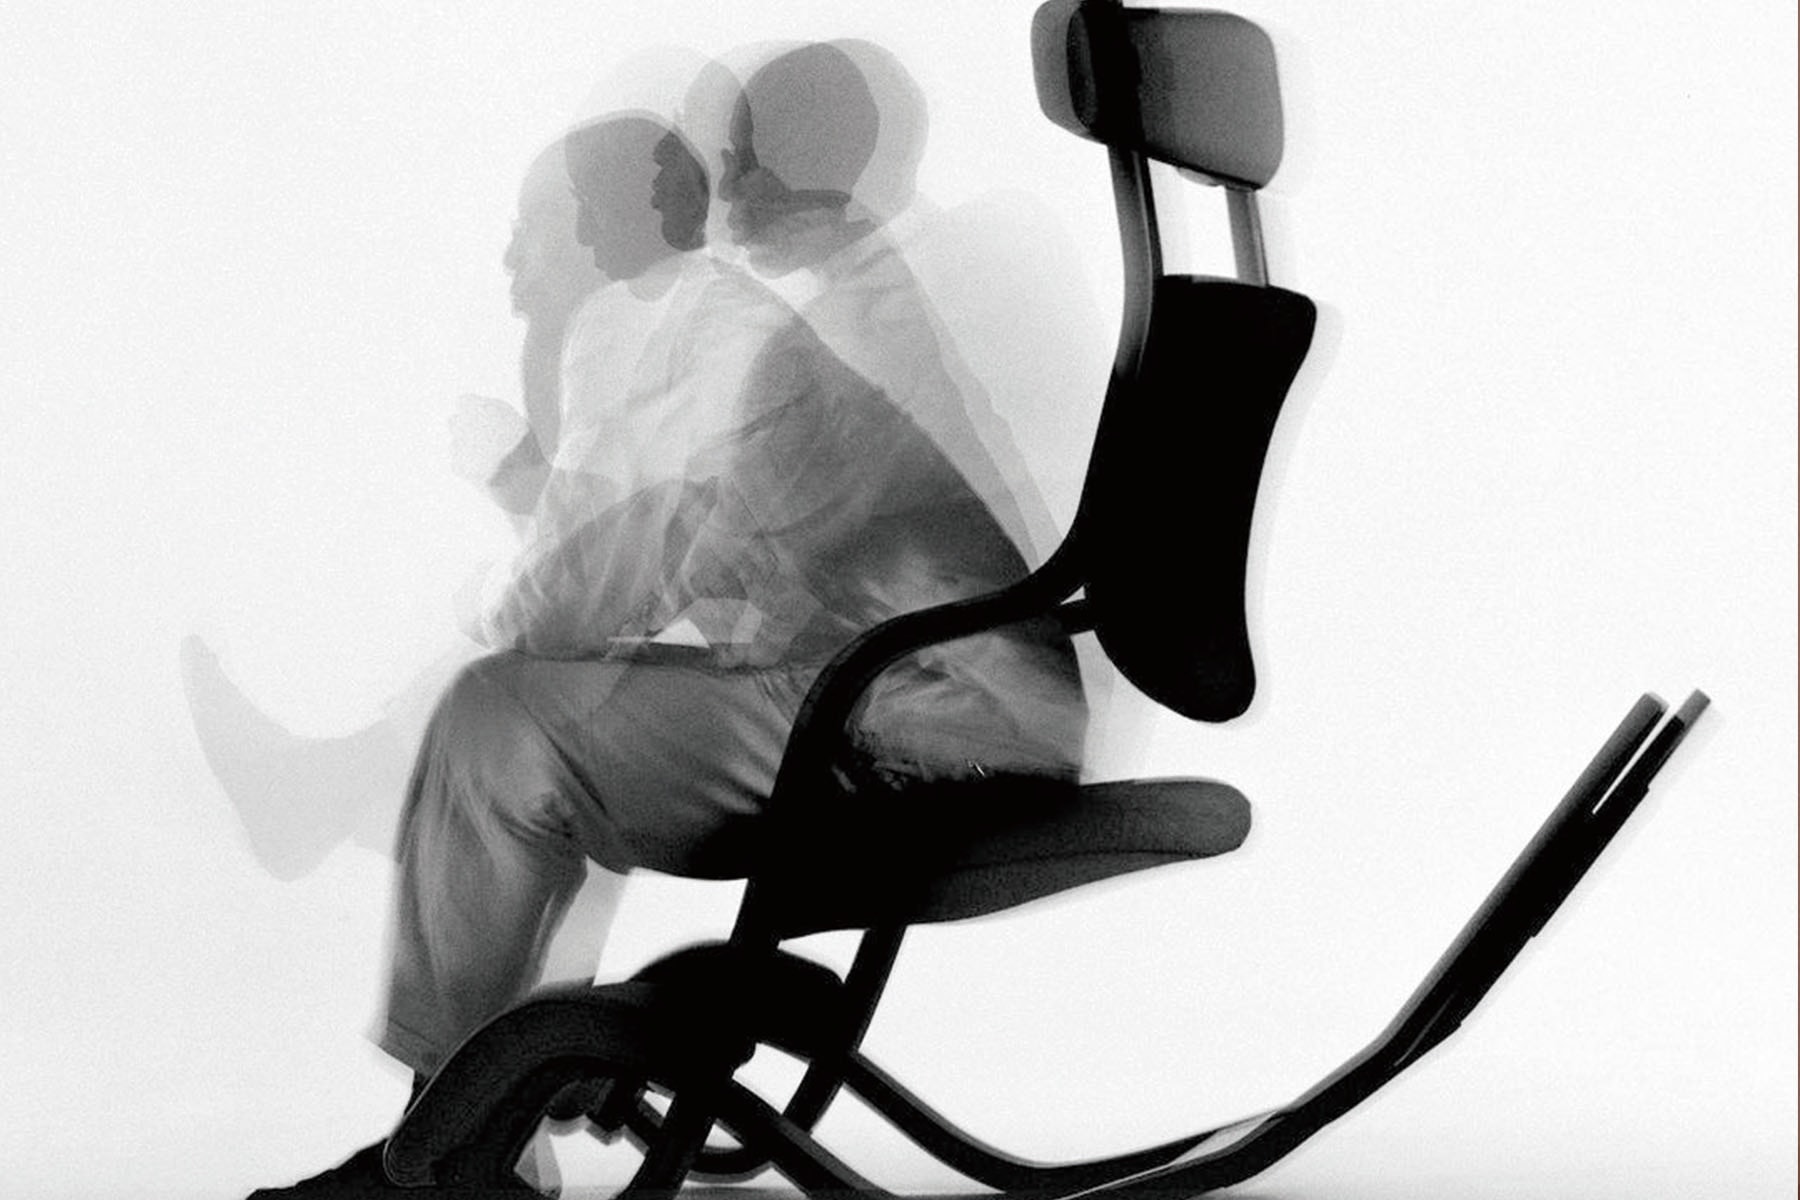 Varier Furniture 攜手 ILL-STUDIO 推出最新人體工學項目「Mind Gravity」